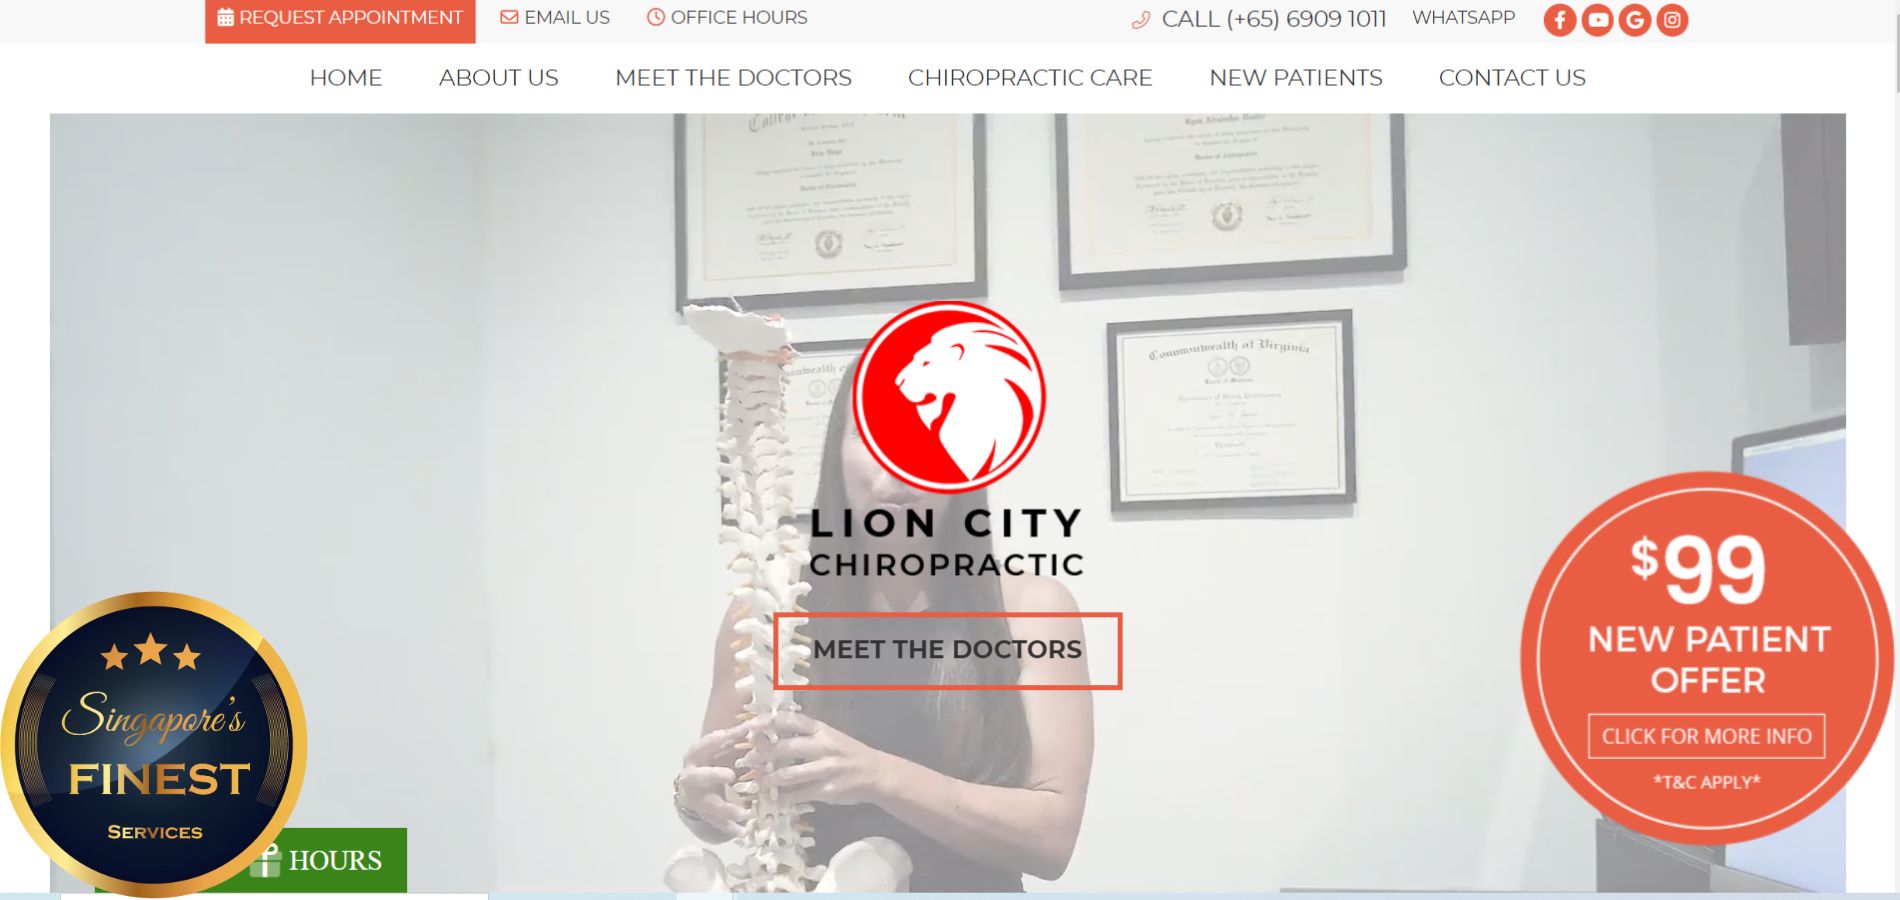 Lion City Chiropractic - Best Chiropractors in Singapore